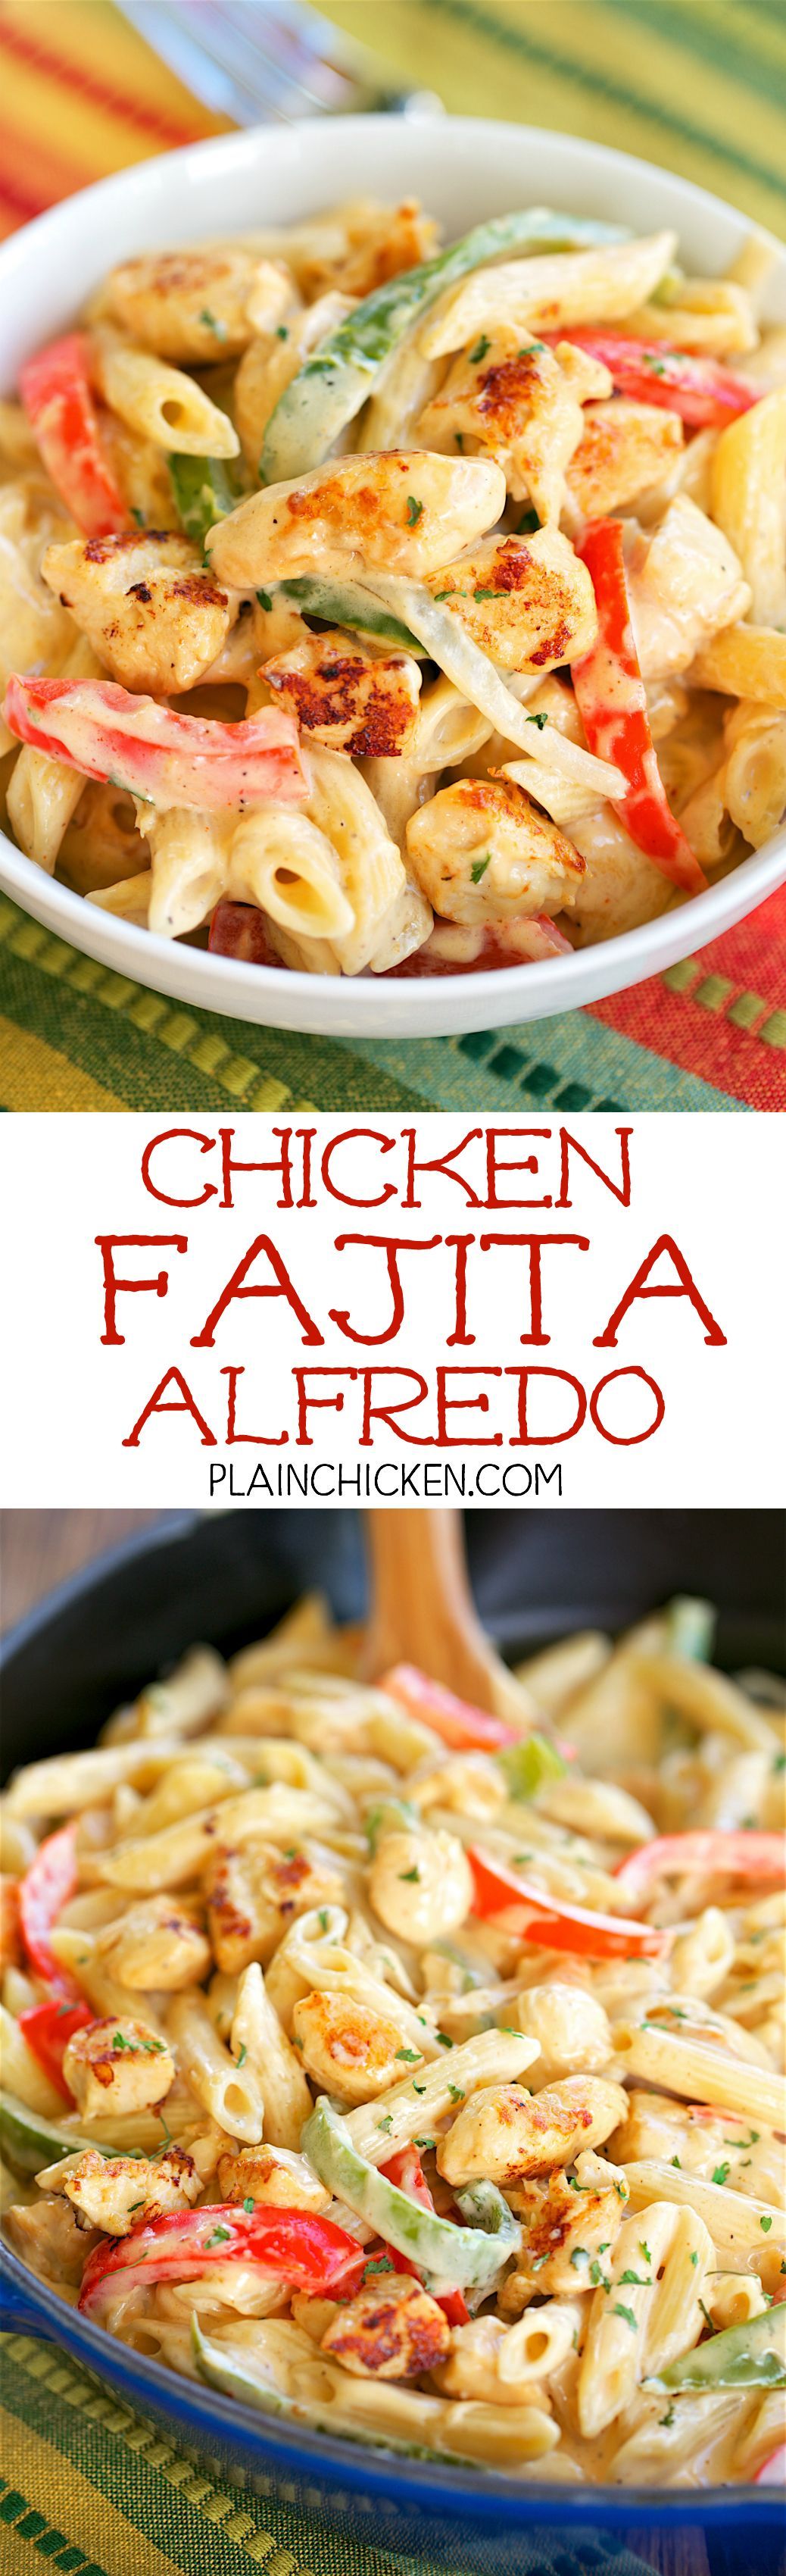 Chicken Fajita Alfredo – ready in 15 minutes! All the flavors of fajitas tossed wi